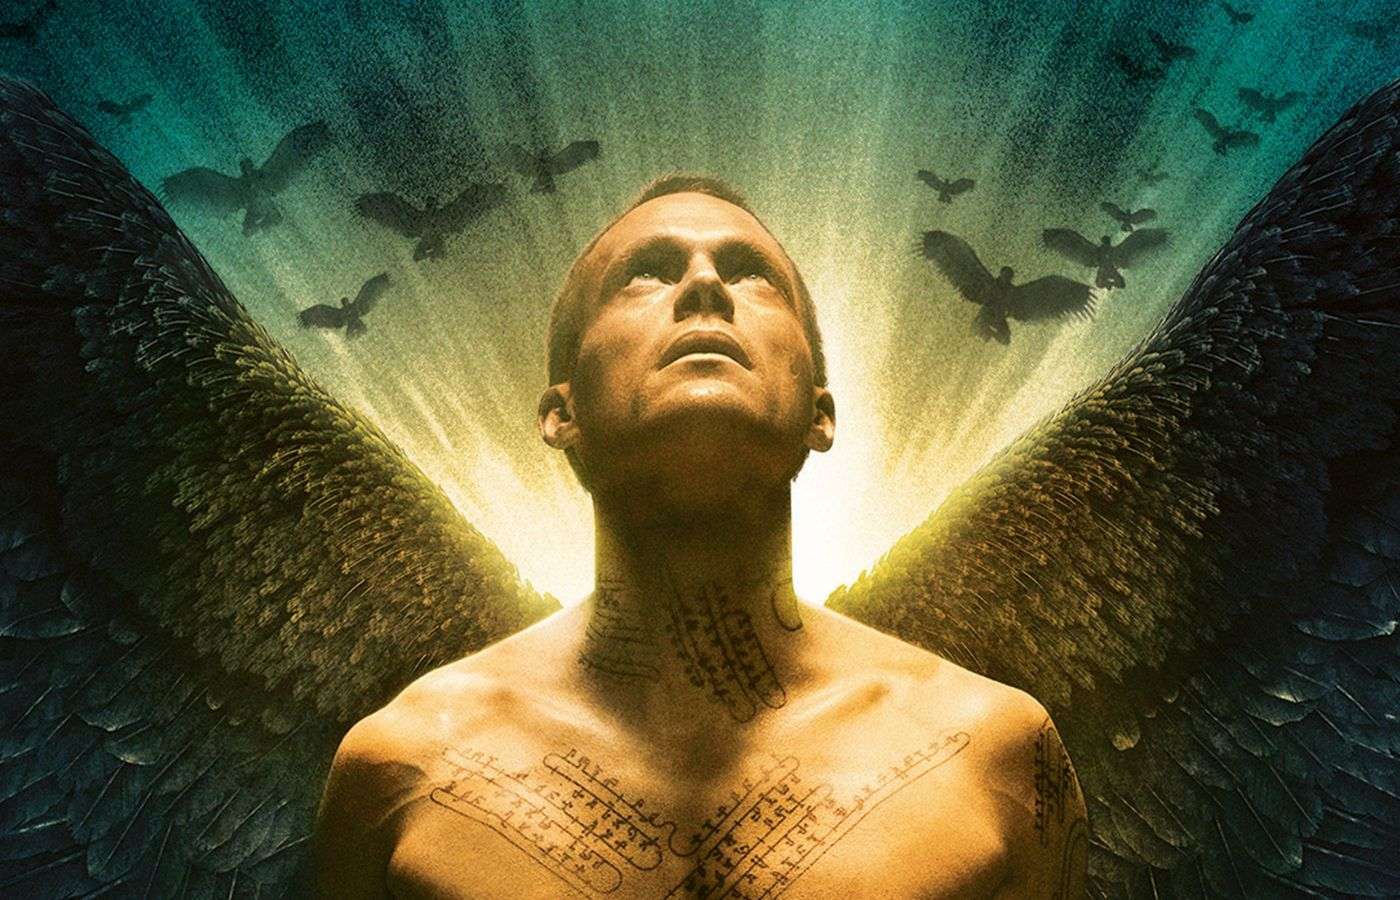 Paul Bettany film Legion is now on Netflix.